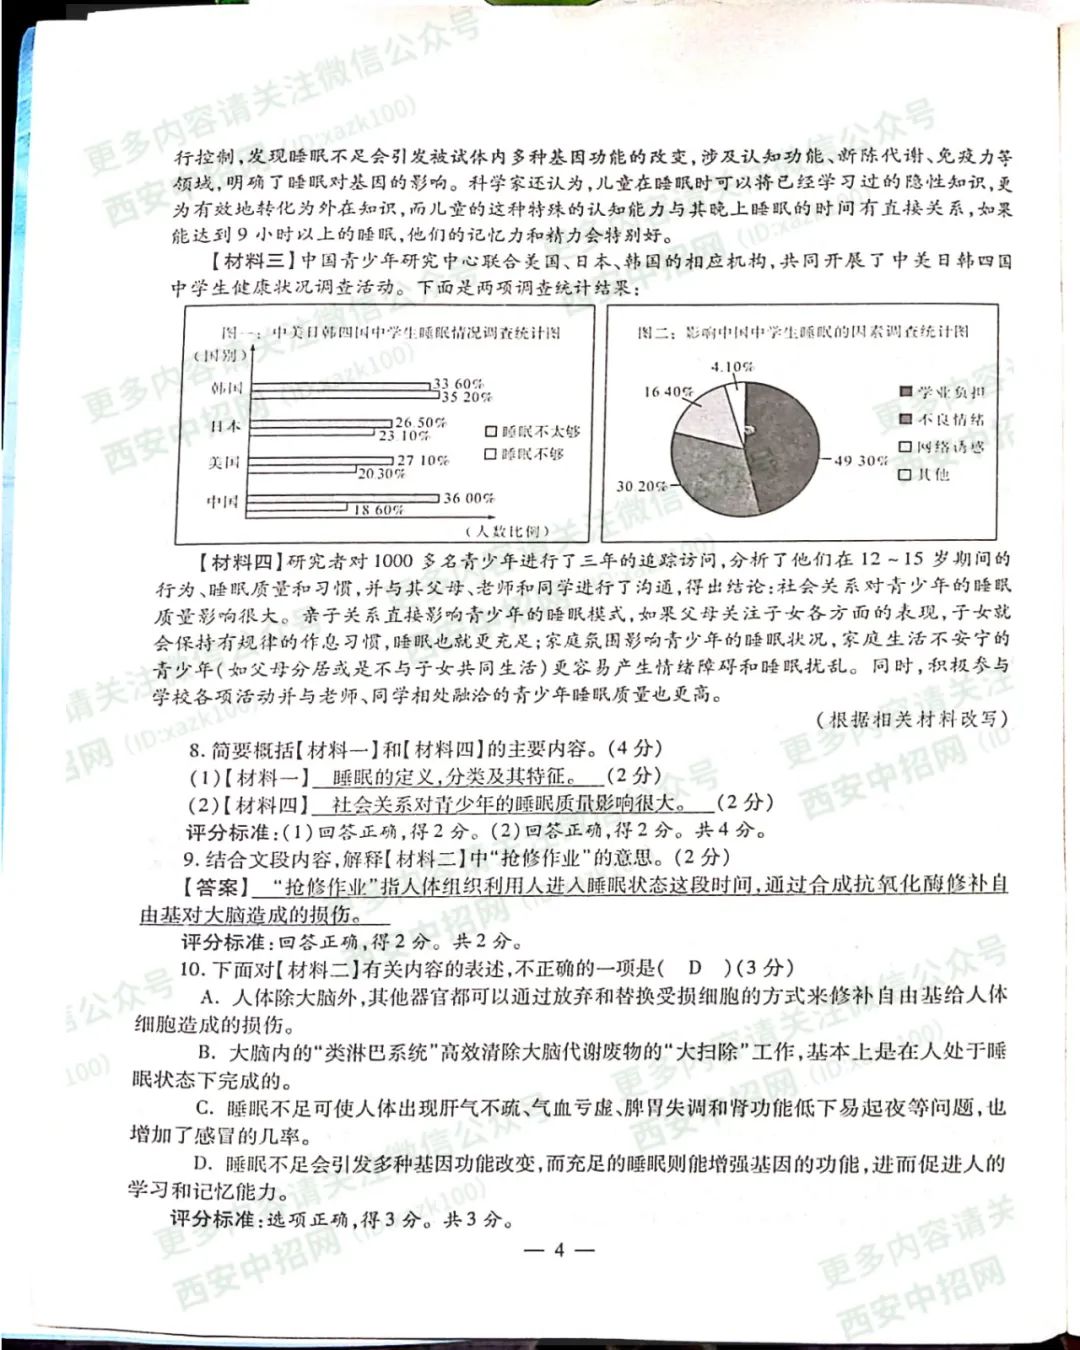 2020年陕西中考《语文》真题及答案已公布